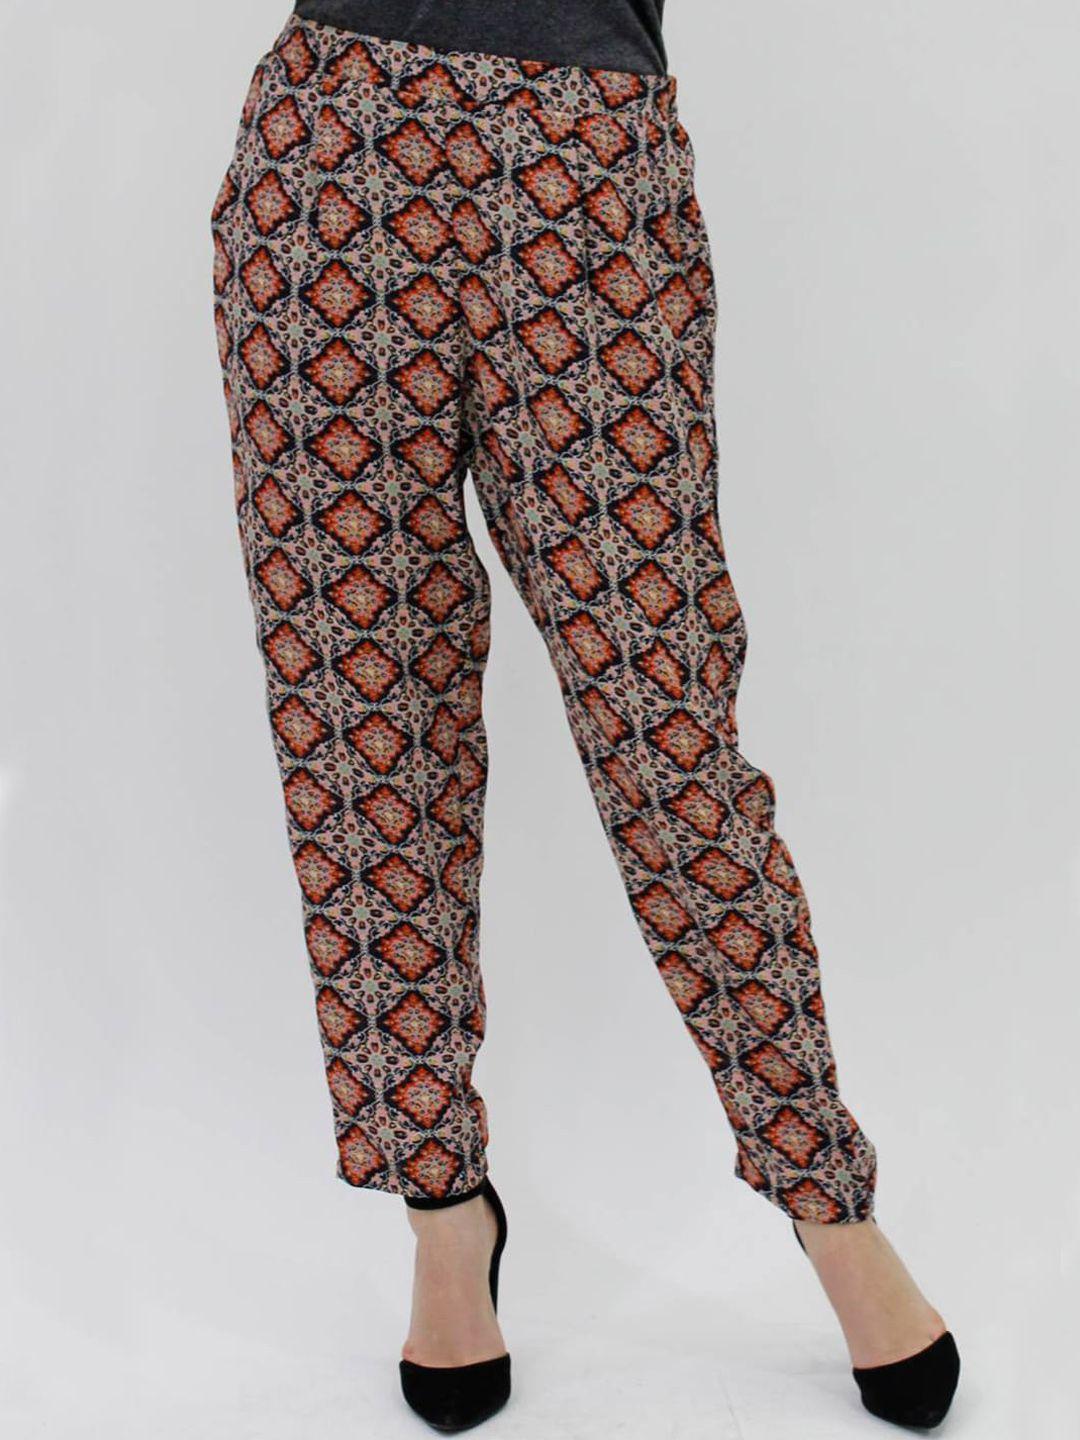 lastinch women multicoloured printed trousers